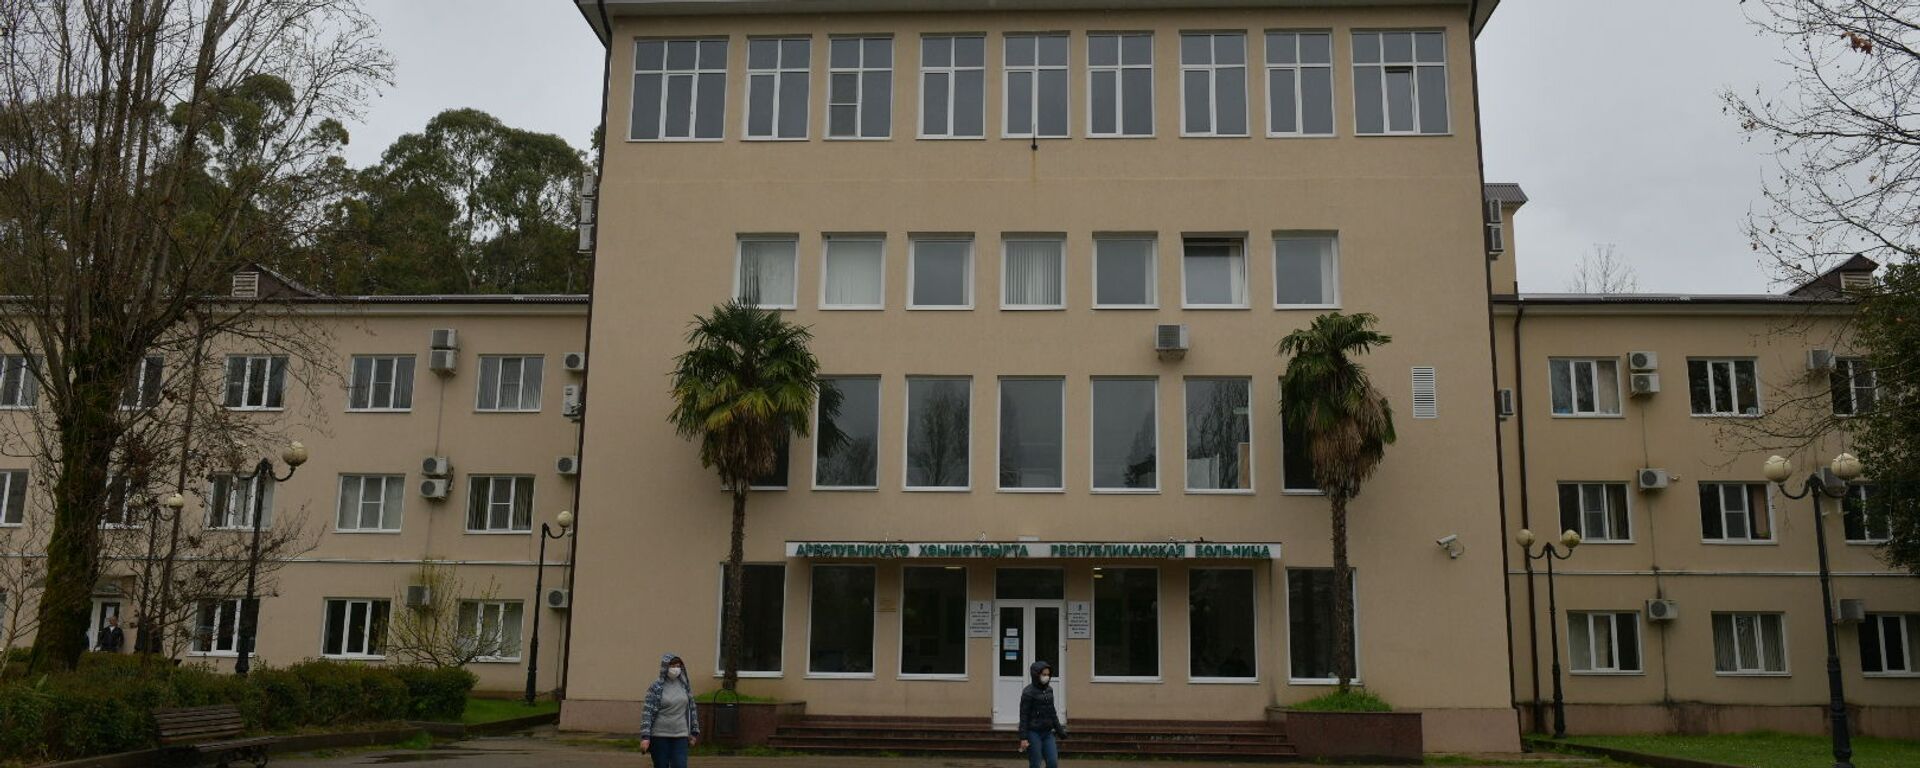 Республиканская больница - Sputnik Абхазия, 1920, 23.04.2021